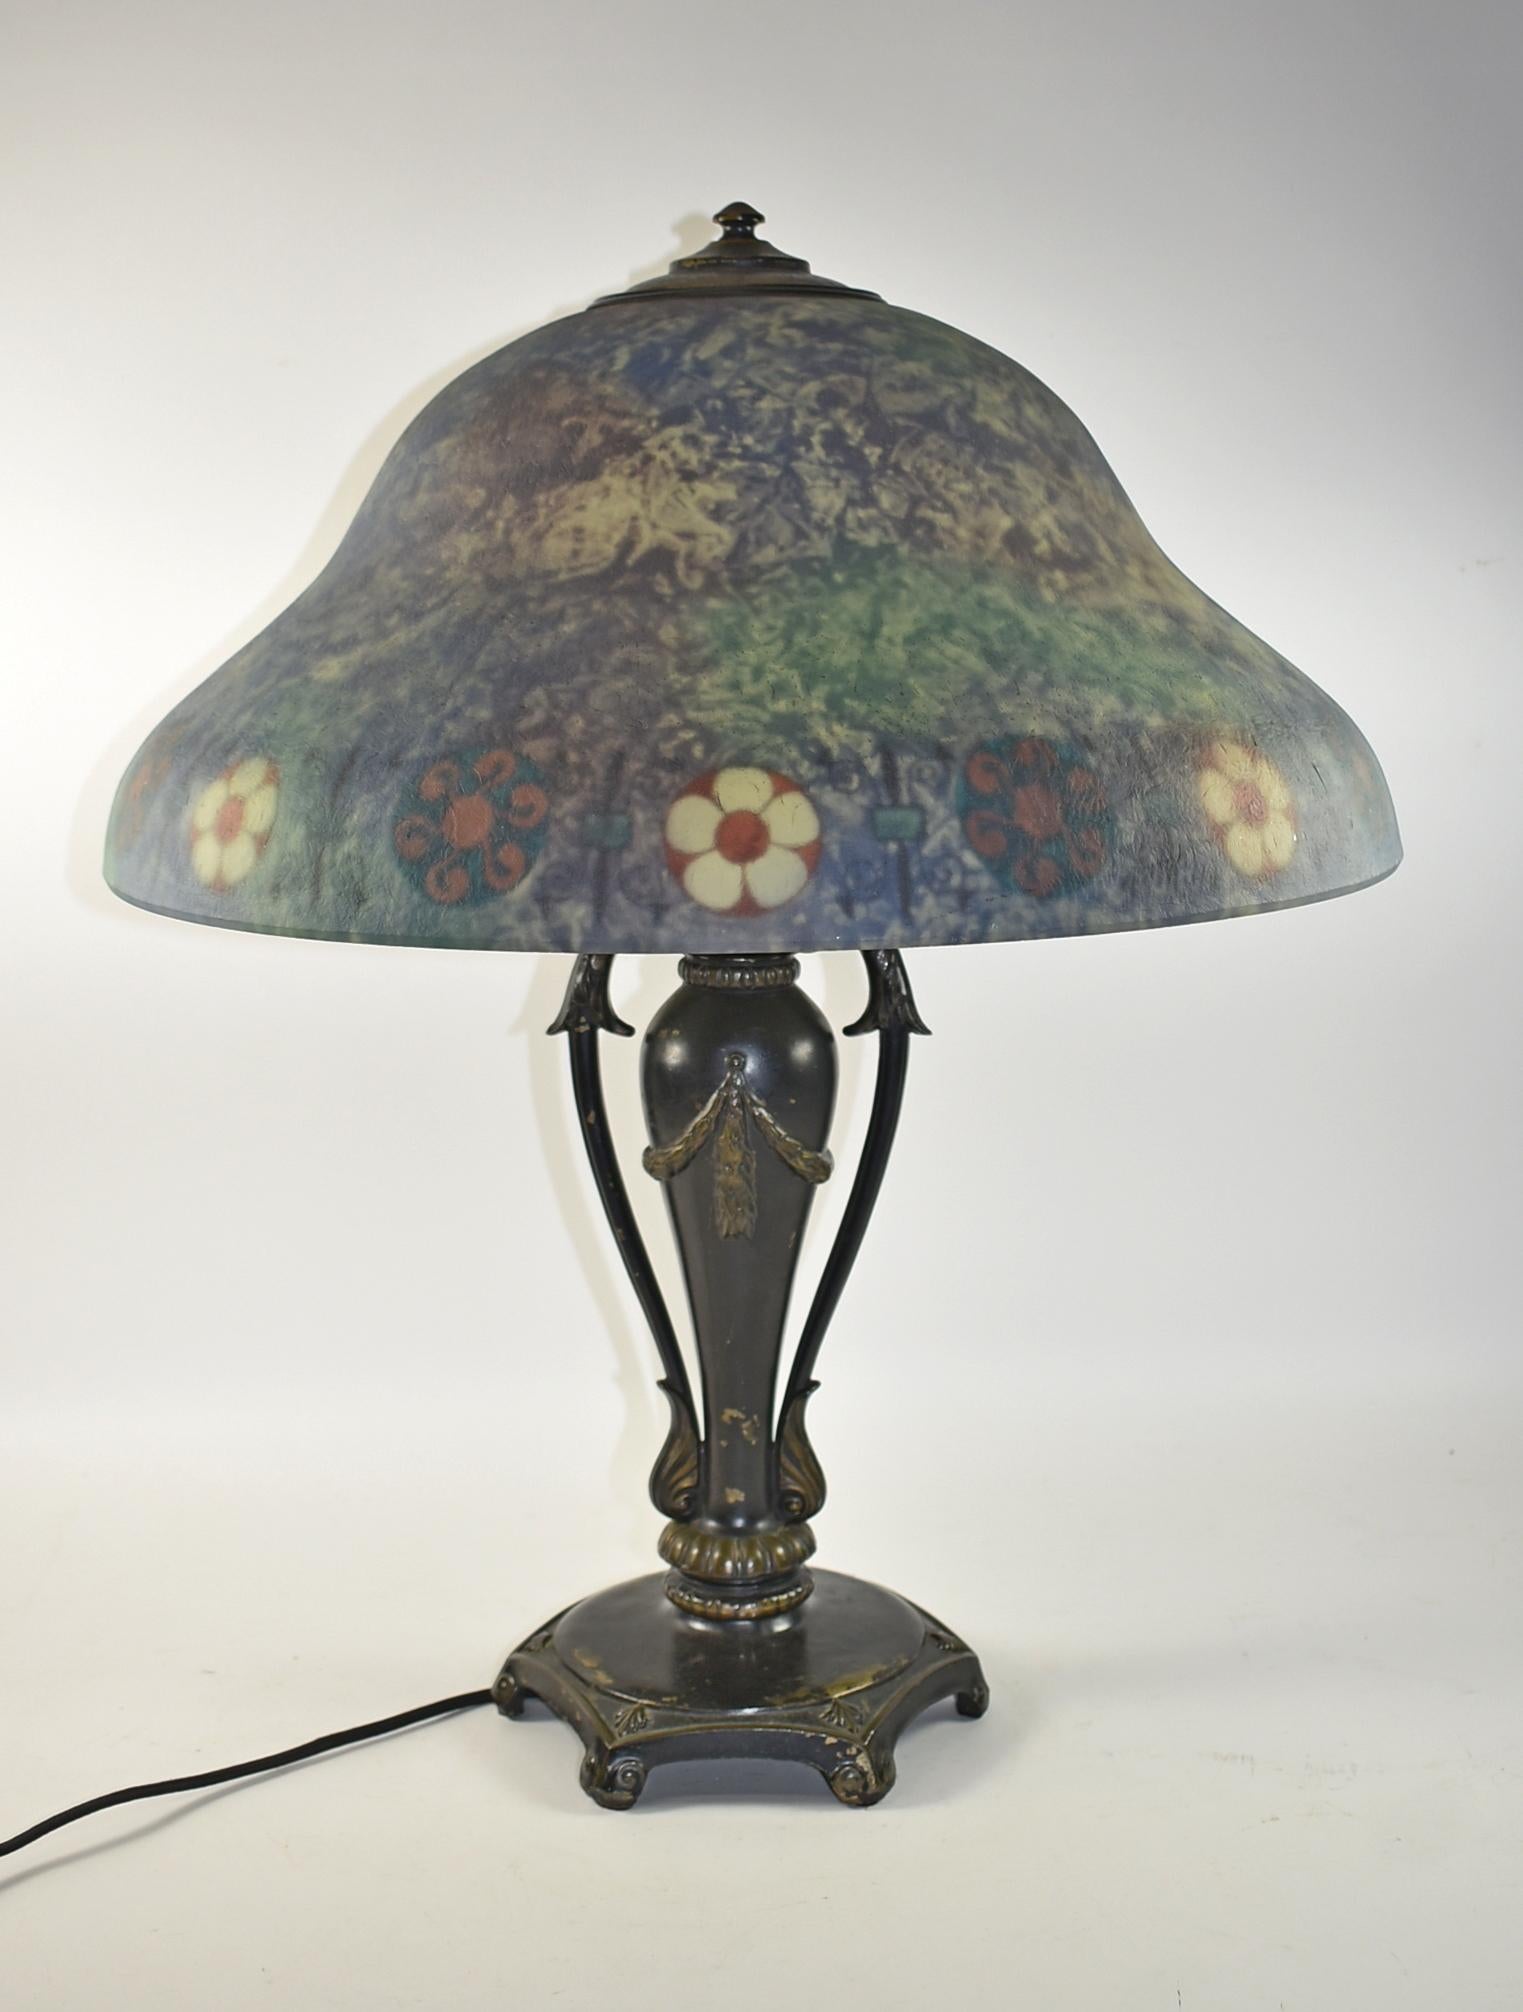 Lampe de table Classique à fleurs peinte à l'envers, vers les années 1920. Abat-jour peint à l'envers en bleu et vert avec une bordure florale. Signé sur la tranche avec 